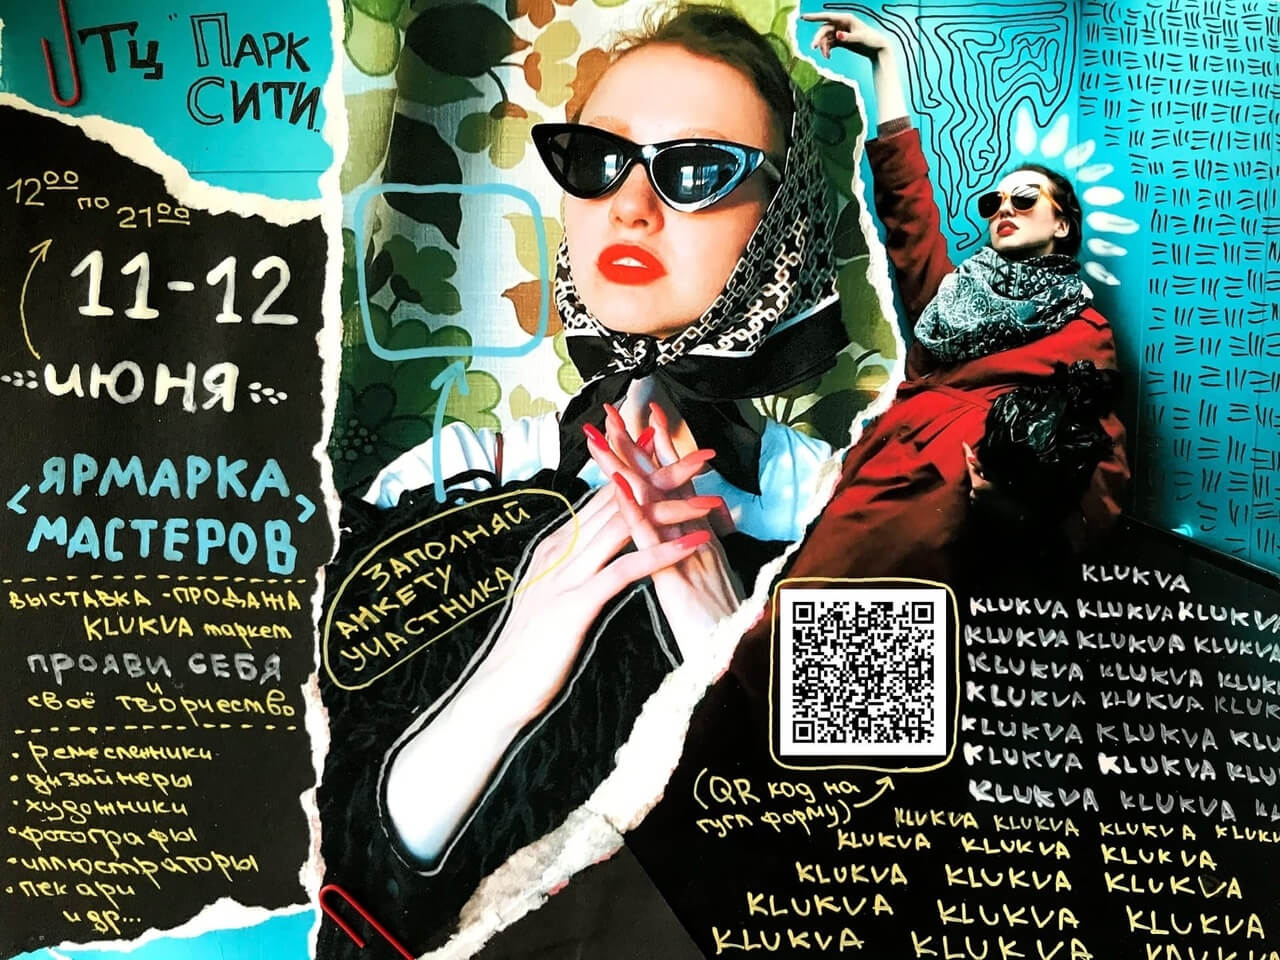 Выставка - продажа KLUKVA маркет пройдёт в Могилёве